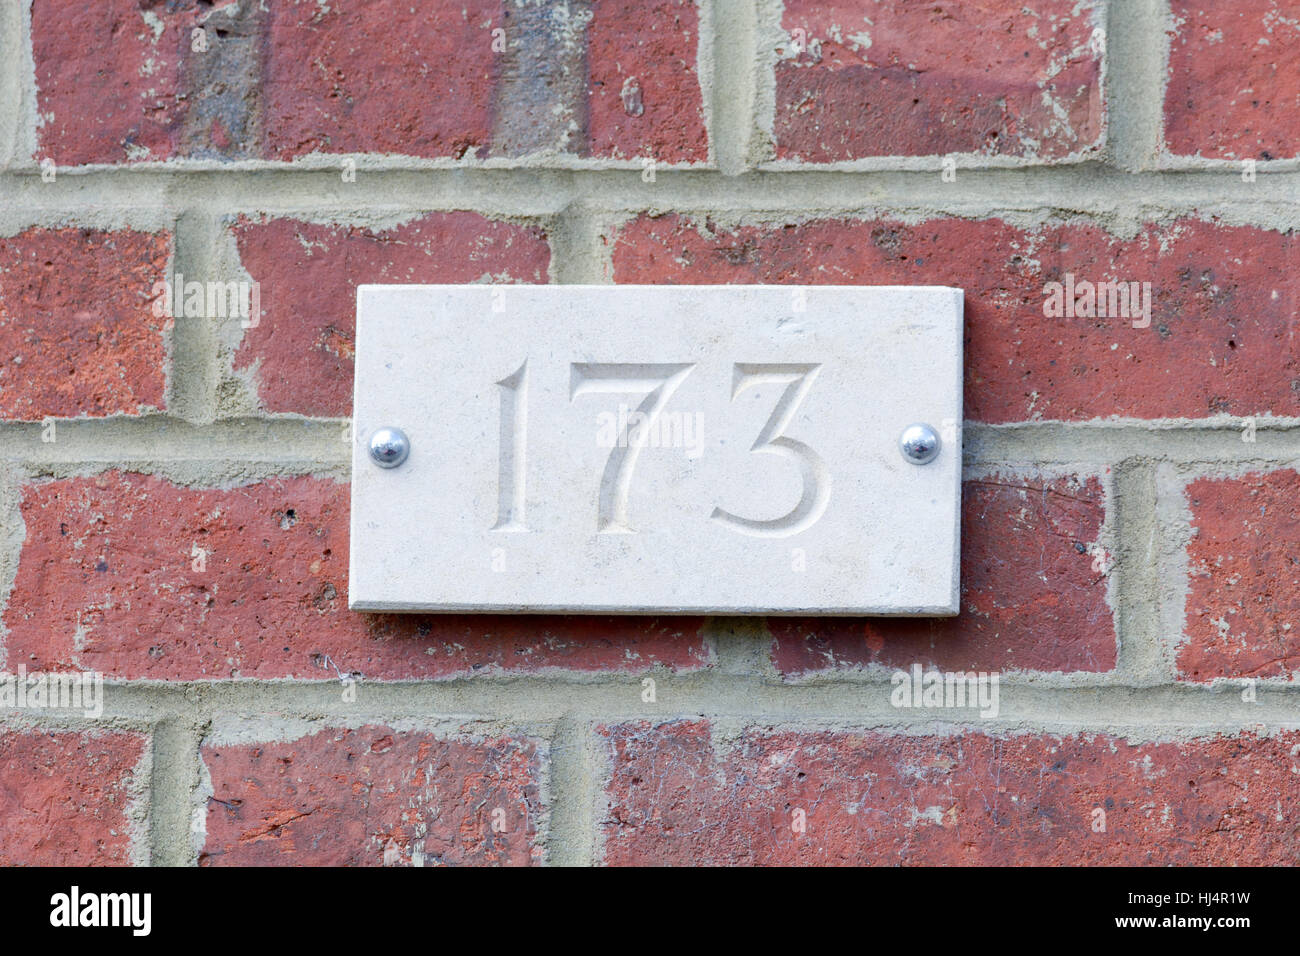 Haus Nummer 173 Zeichen auf roten Backsteinmauer Stockfoto